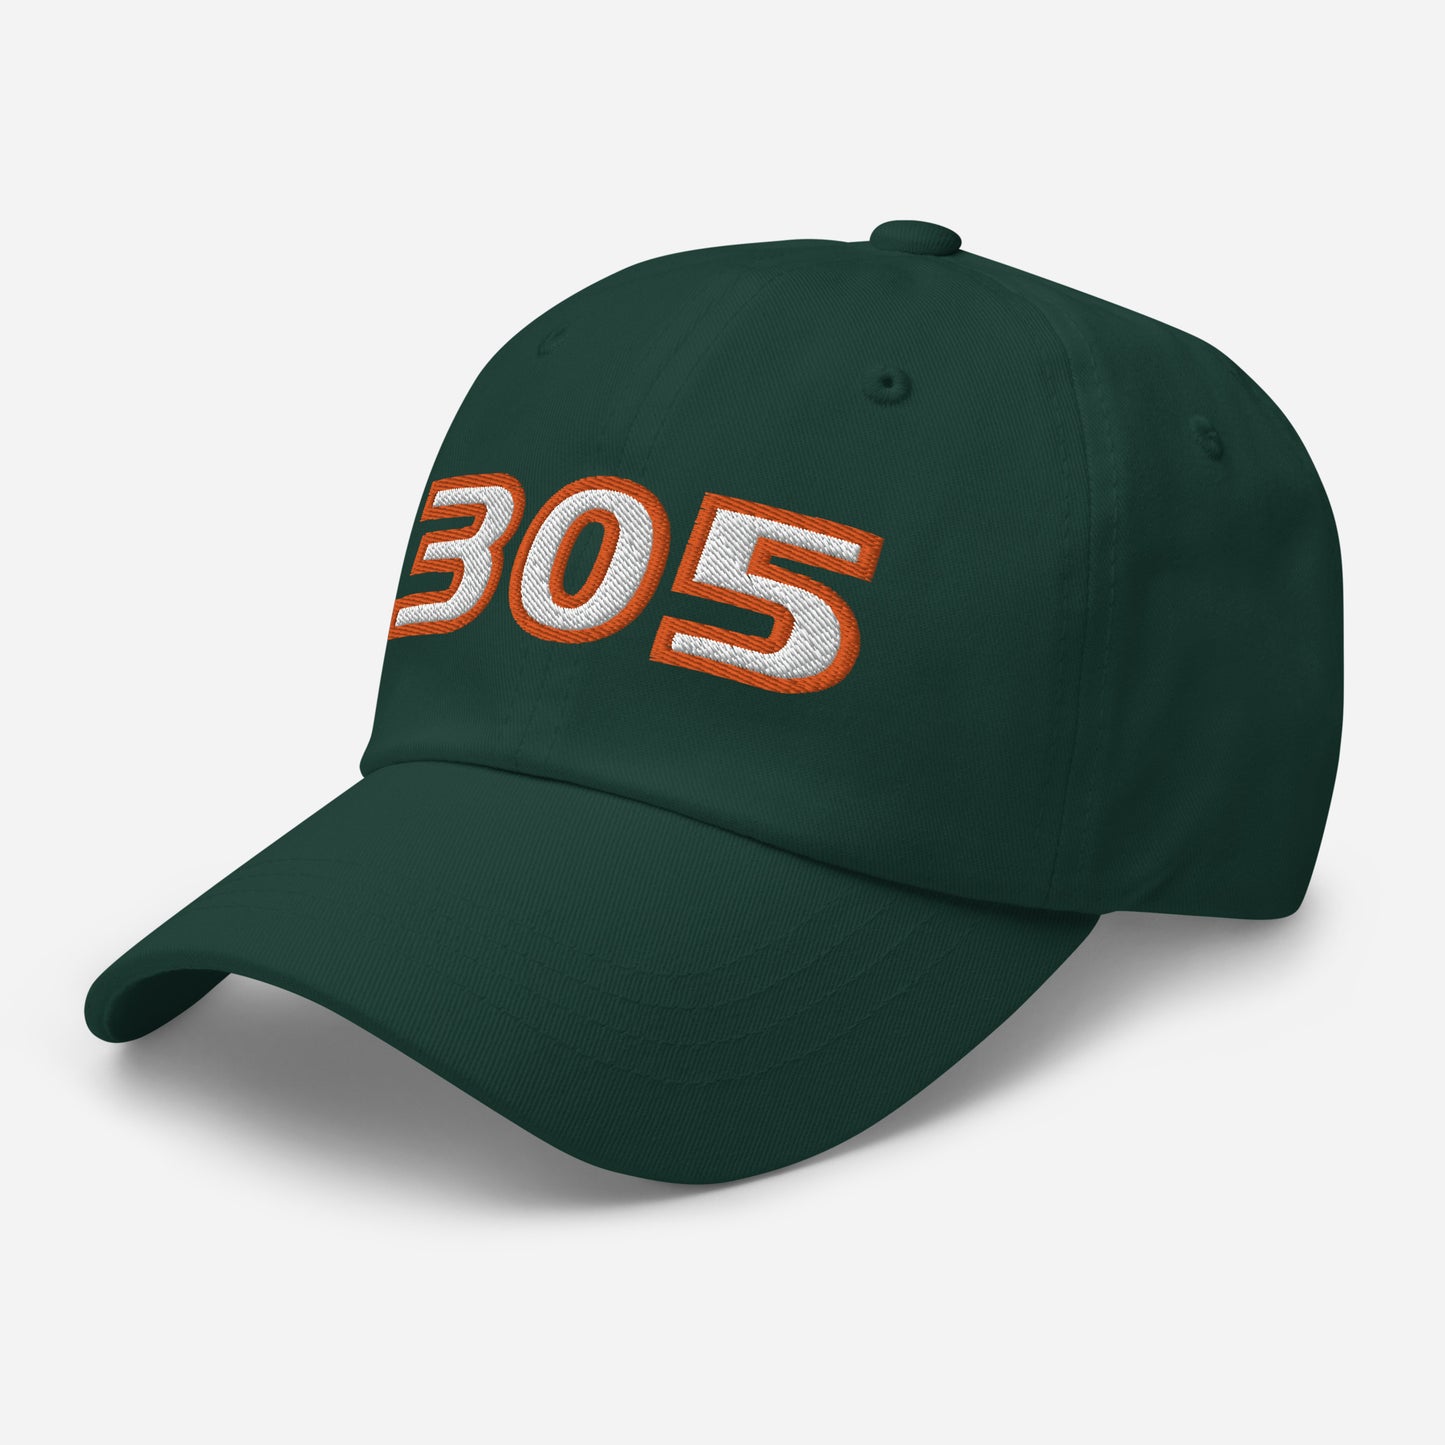 Miami Dad Hat: Hurricanes 305